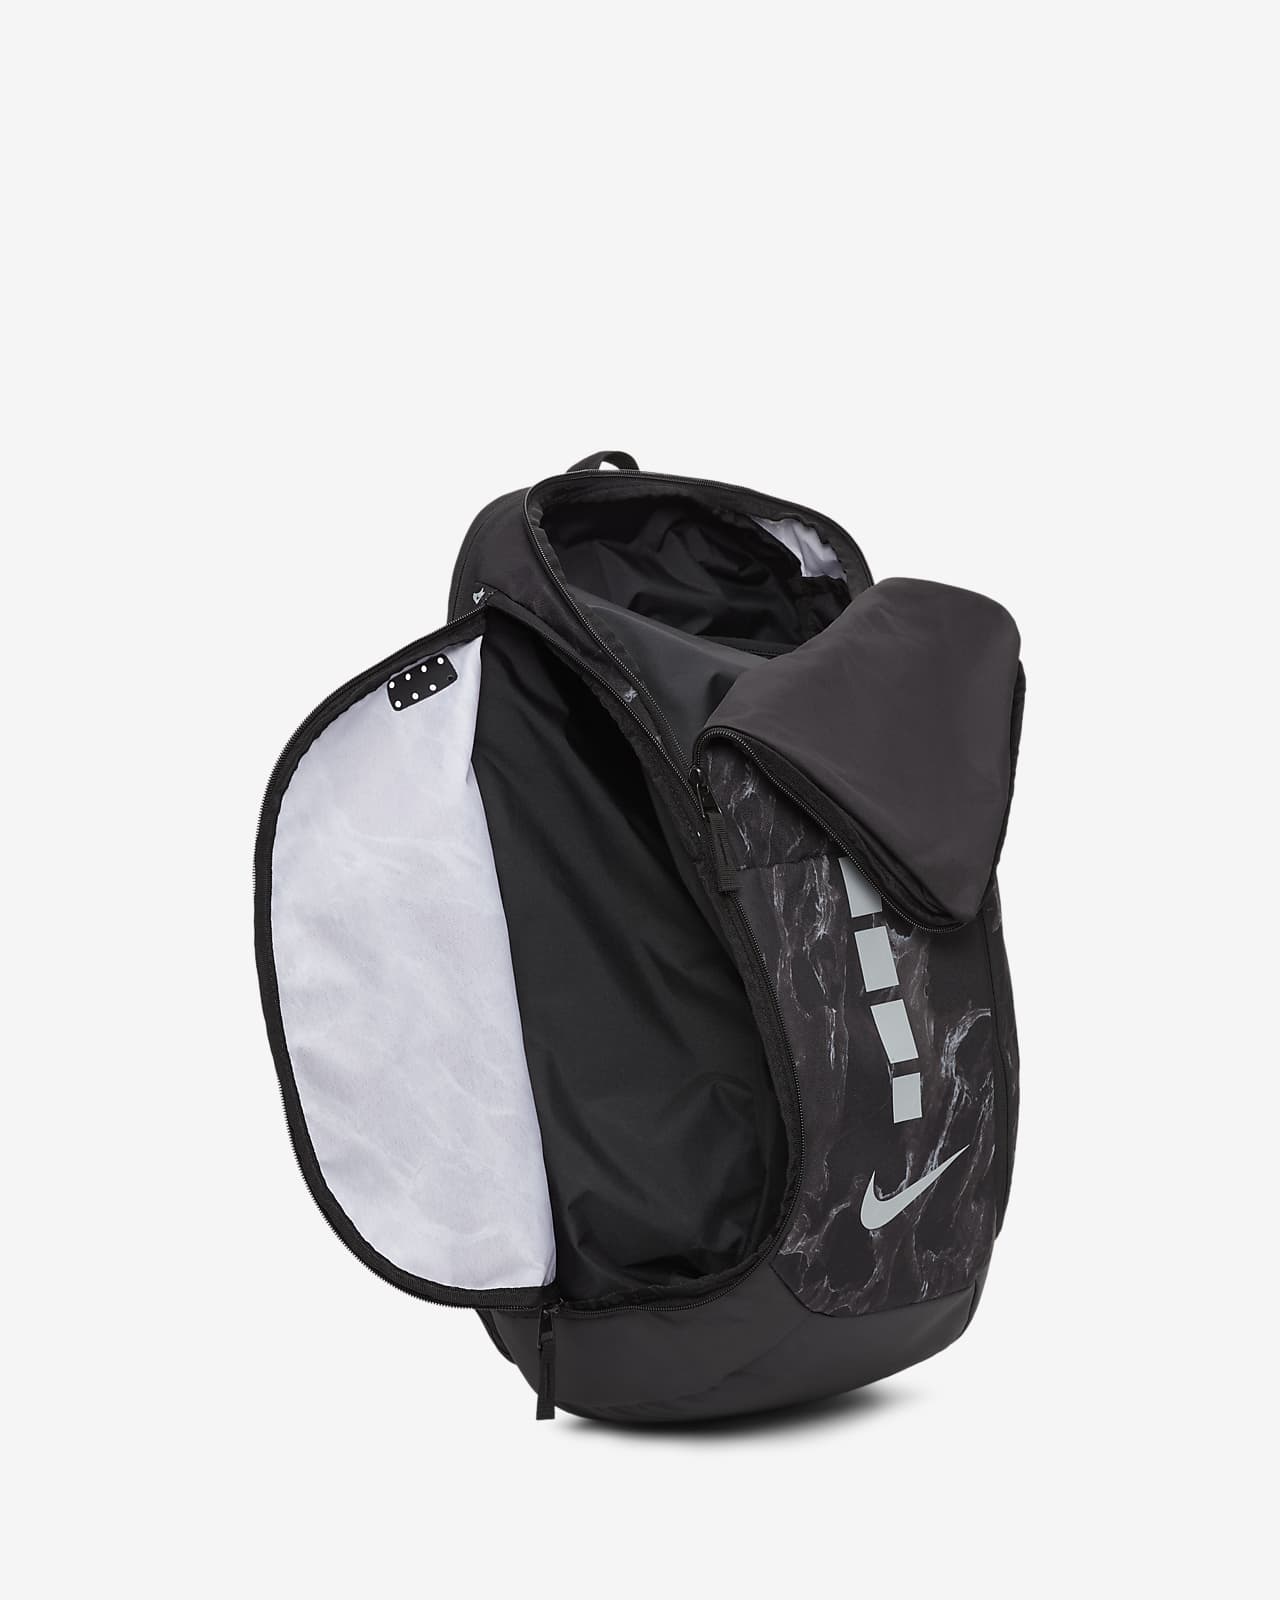 nike hoops elite pro backpack sale